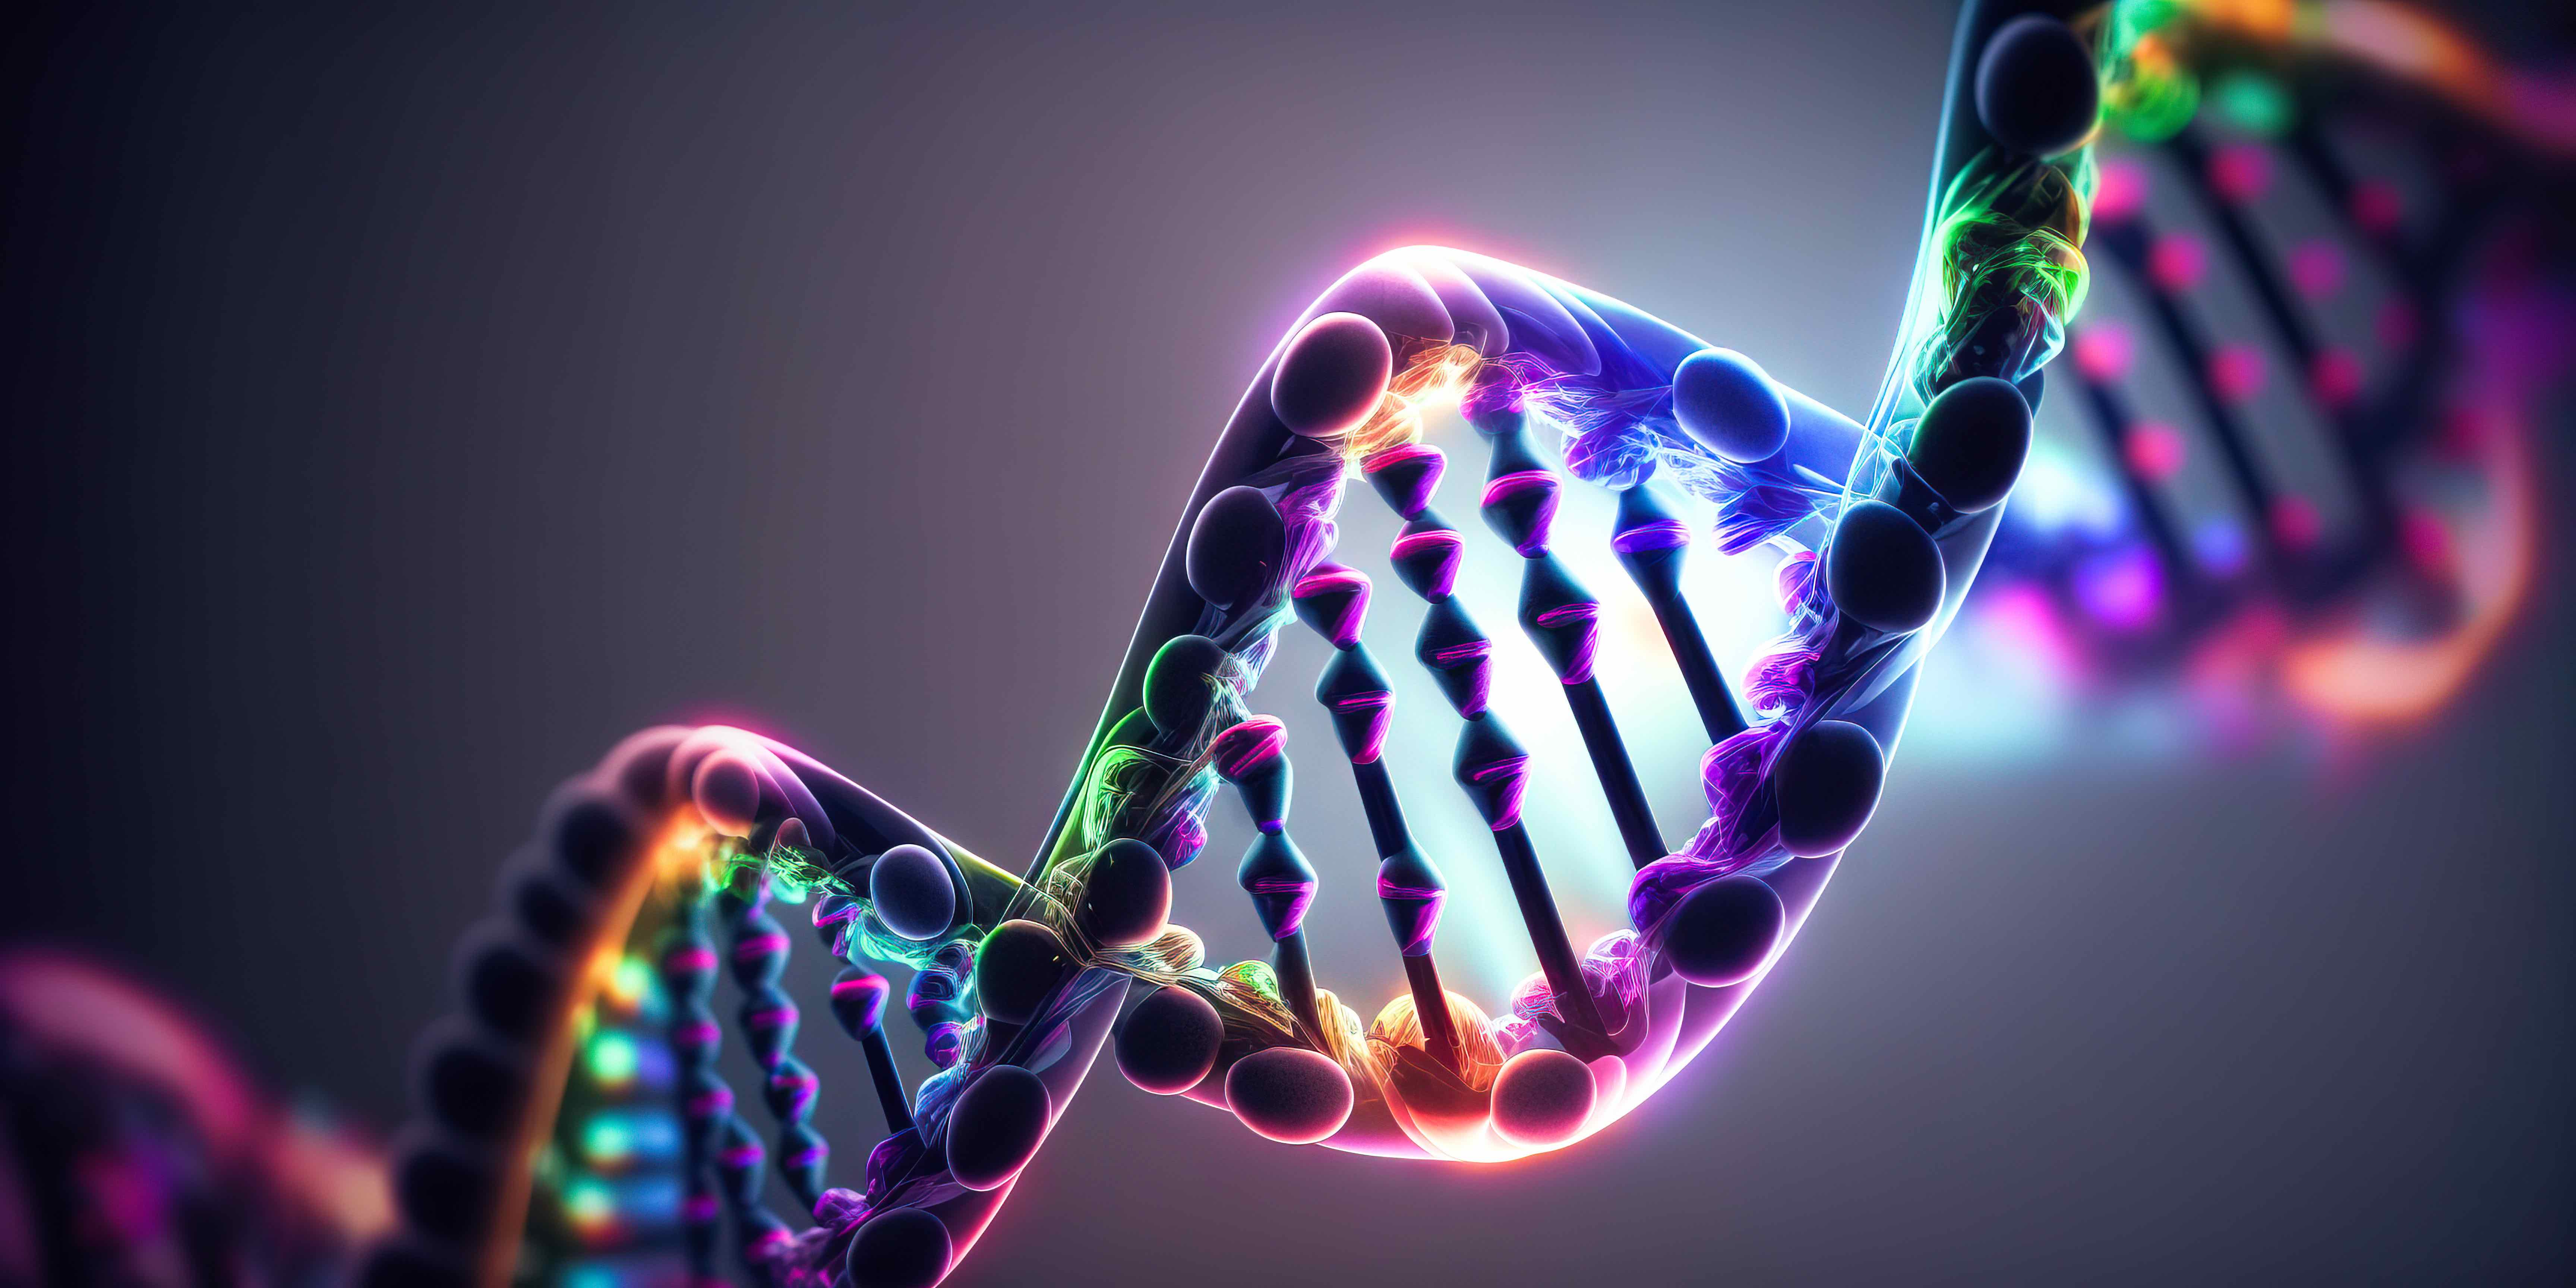 L'épigénétique est une branche de la génétique qui étudie les changements dans l’expression des gènes. L'épigénétique peut être impliquée dans le développement de maladies, comme le cancer ou la maladie d'Alzheimer. © superstock, Adobe stock